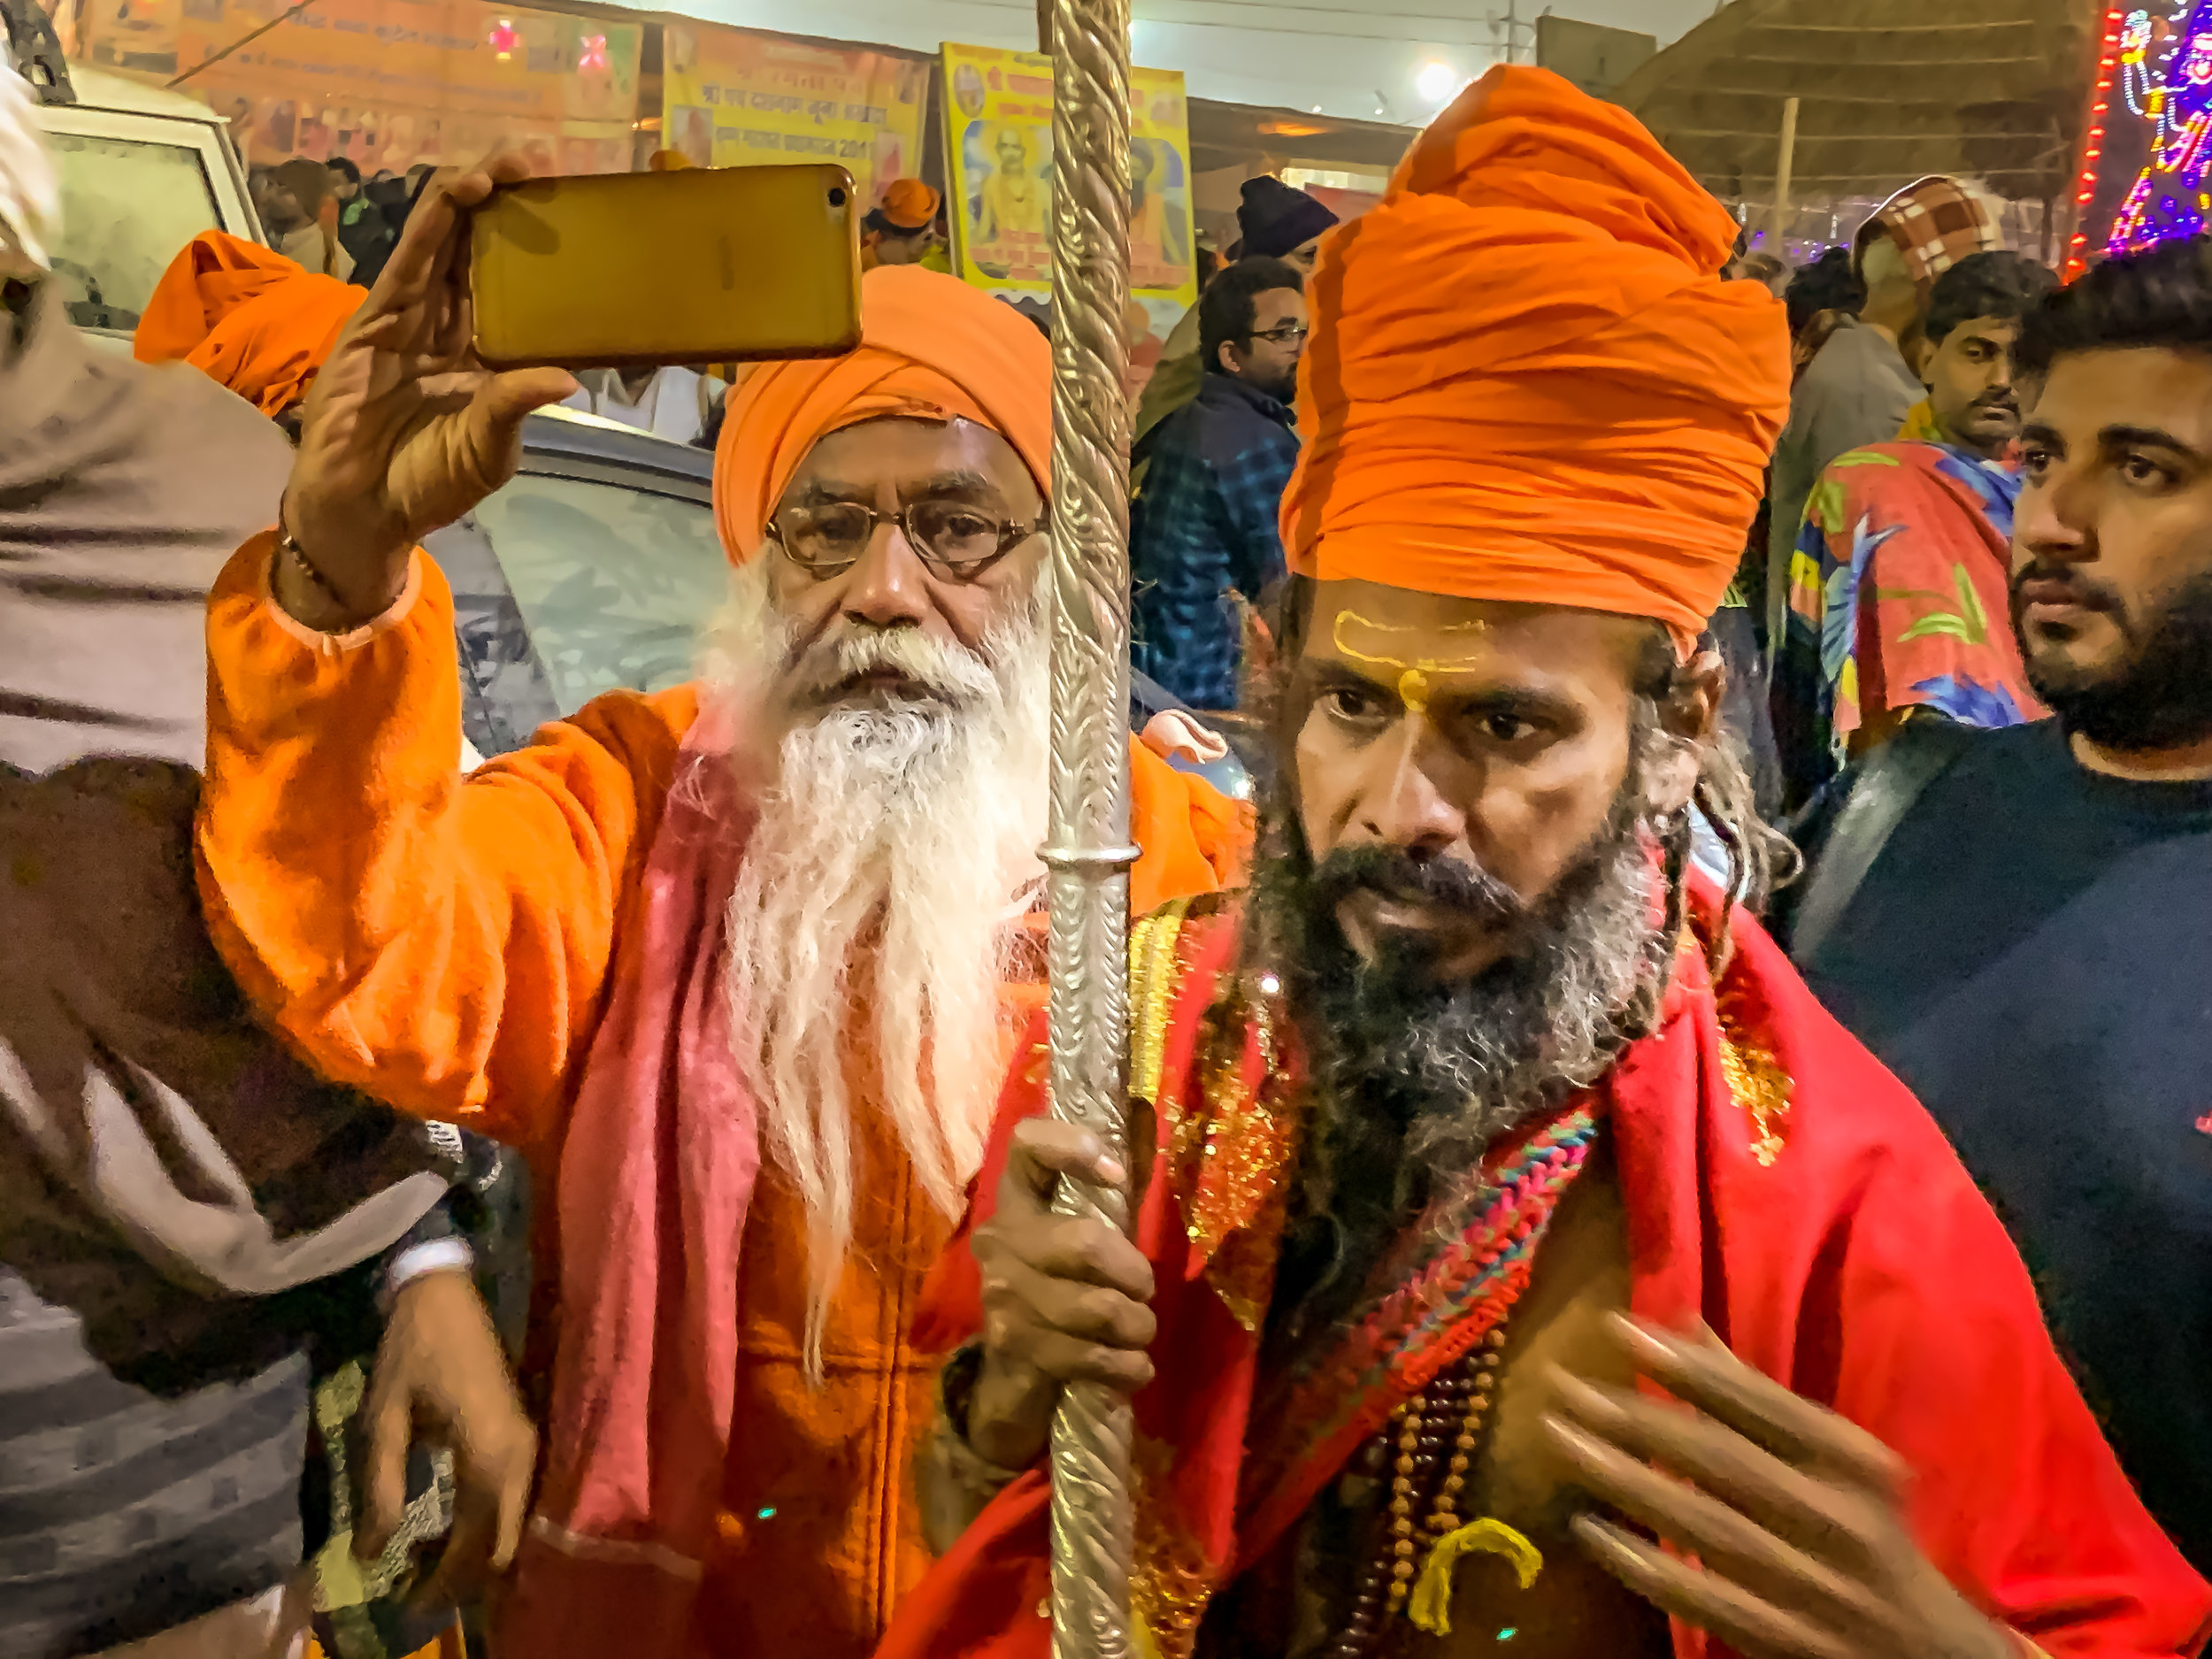 Sadhu at the Juna Akhara tents, Kumbh Mela, Prayagraj, India